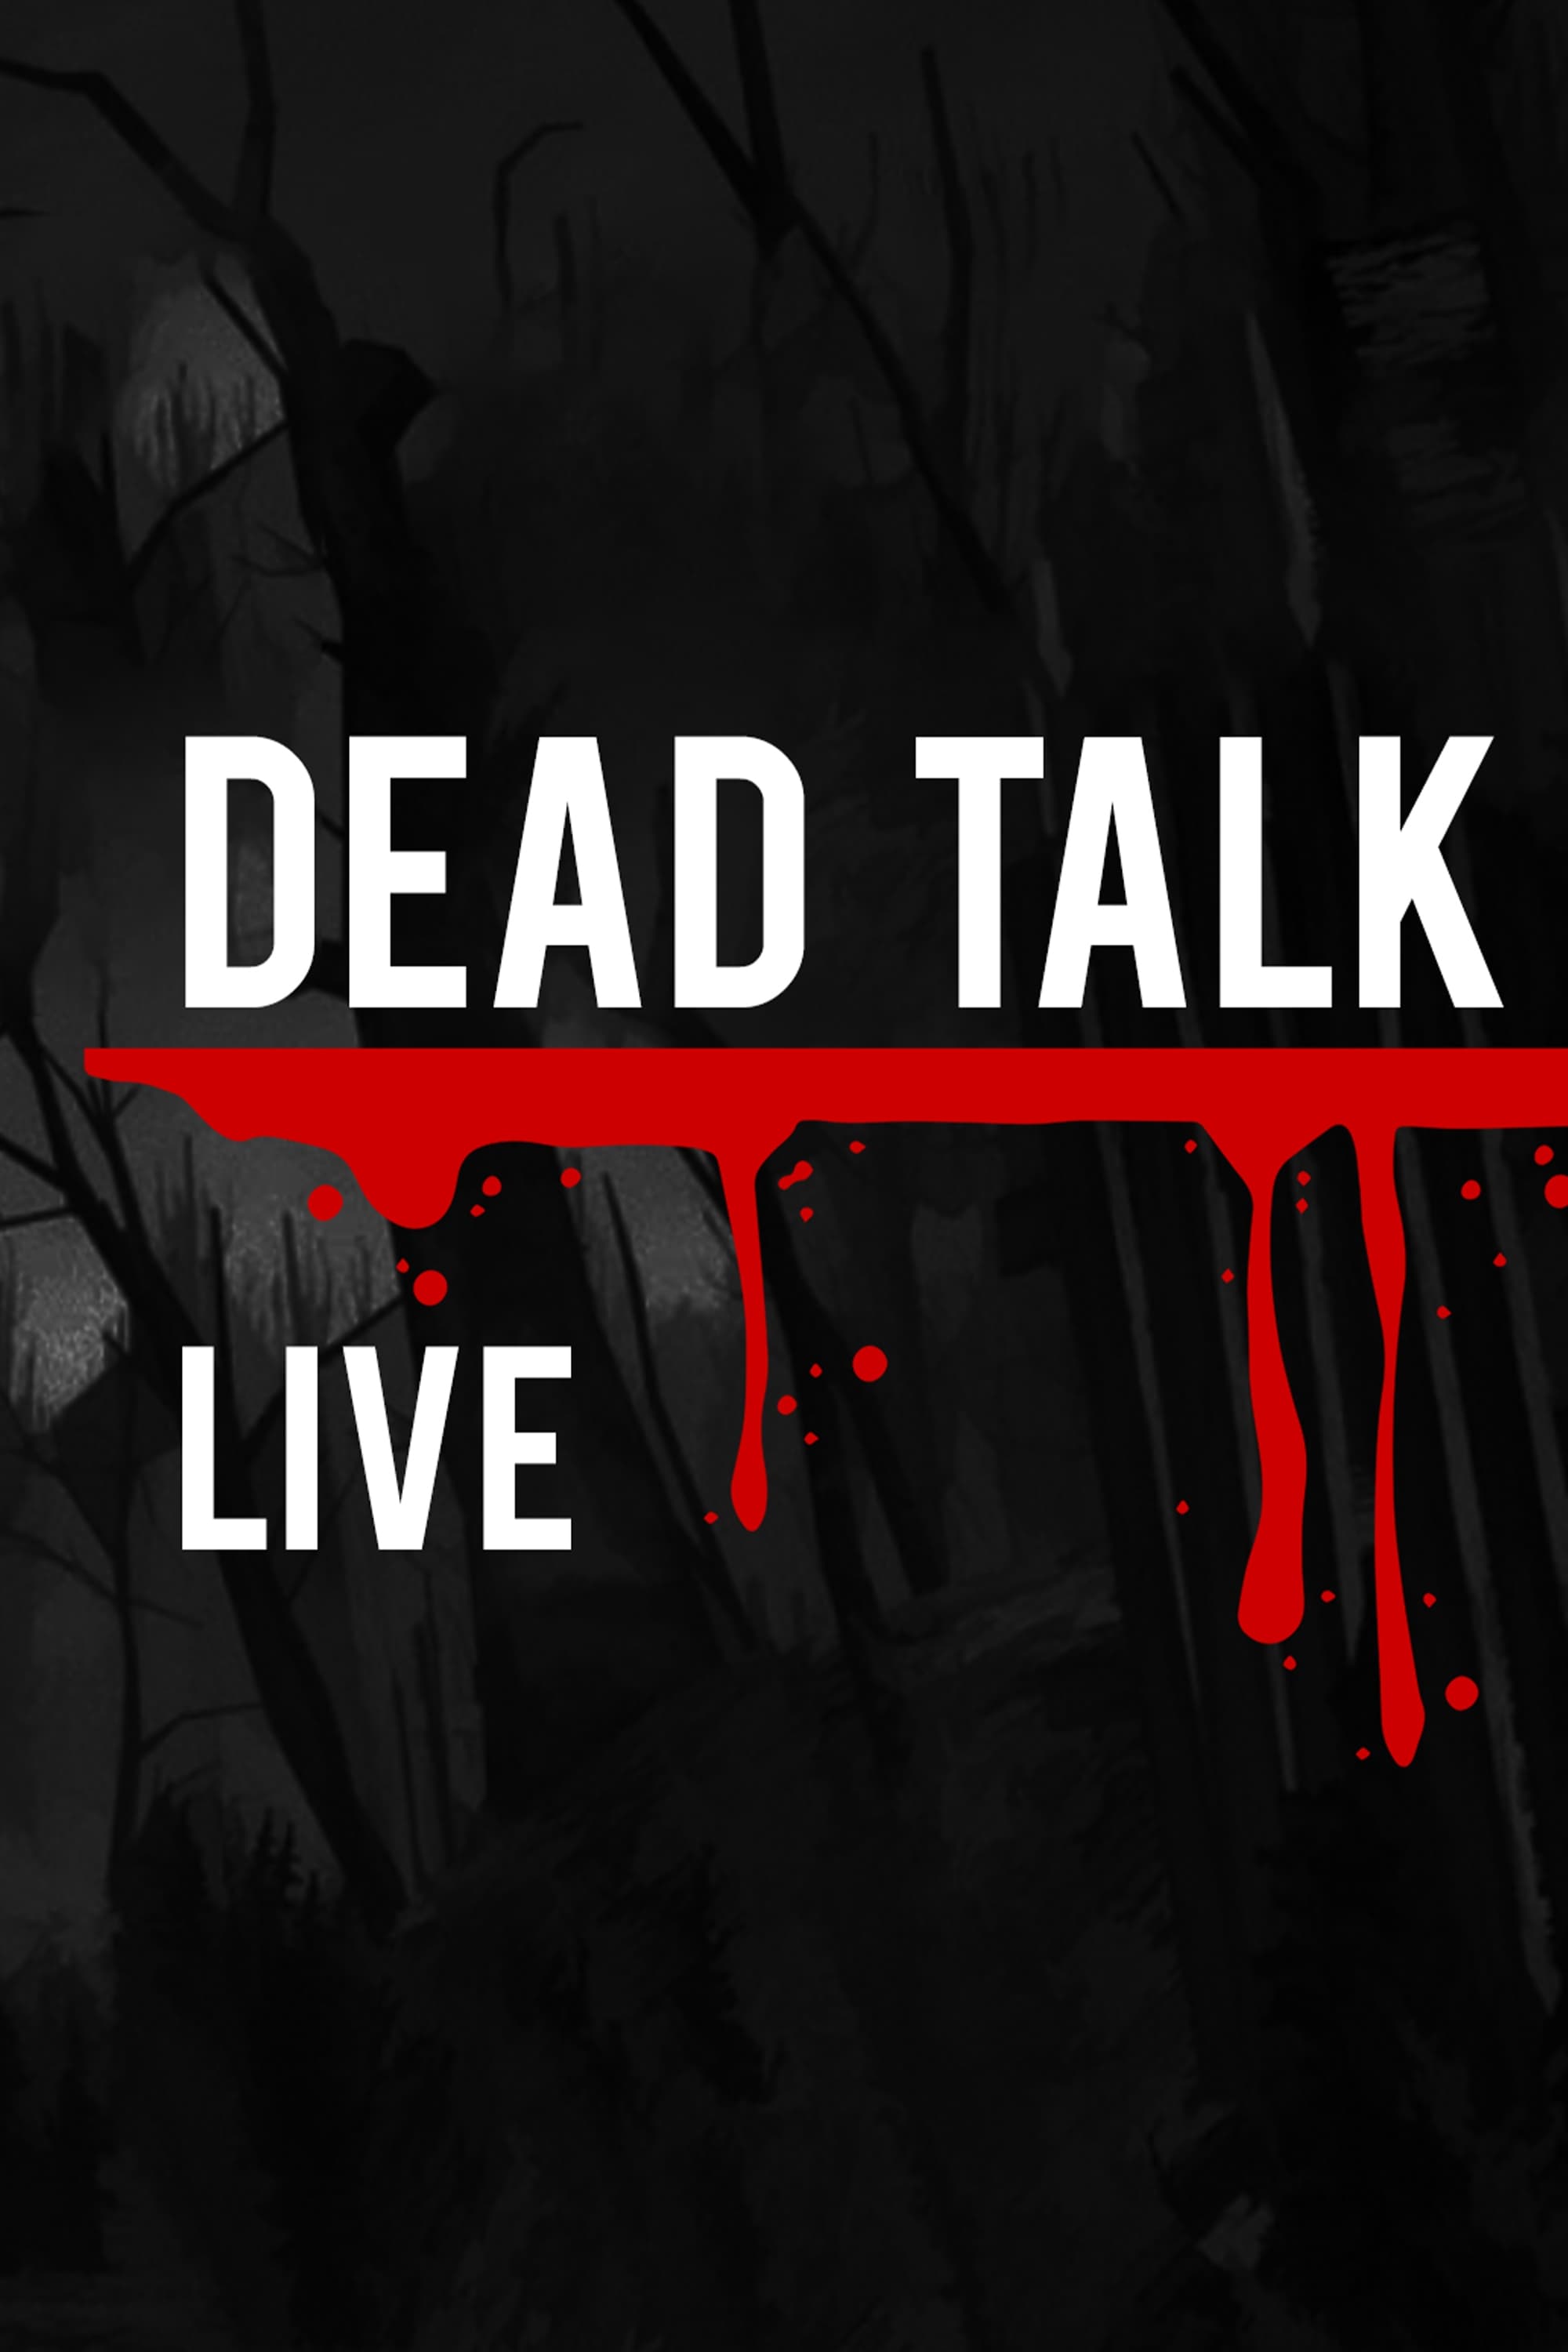 Dead Talk Live